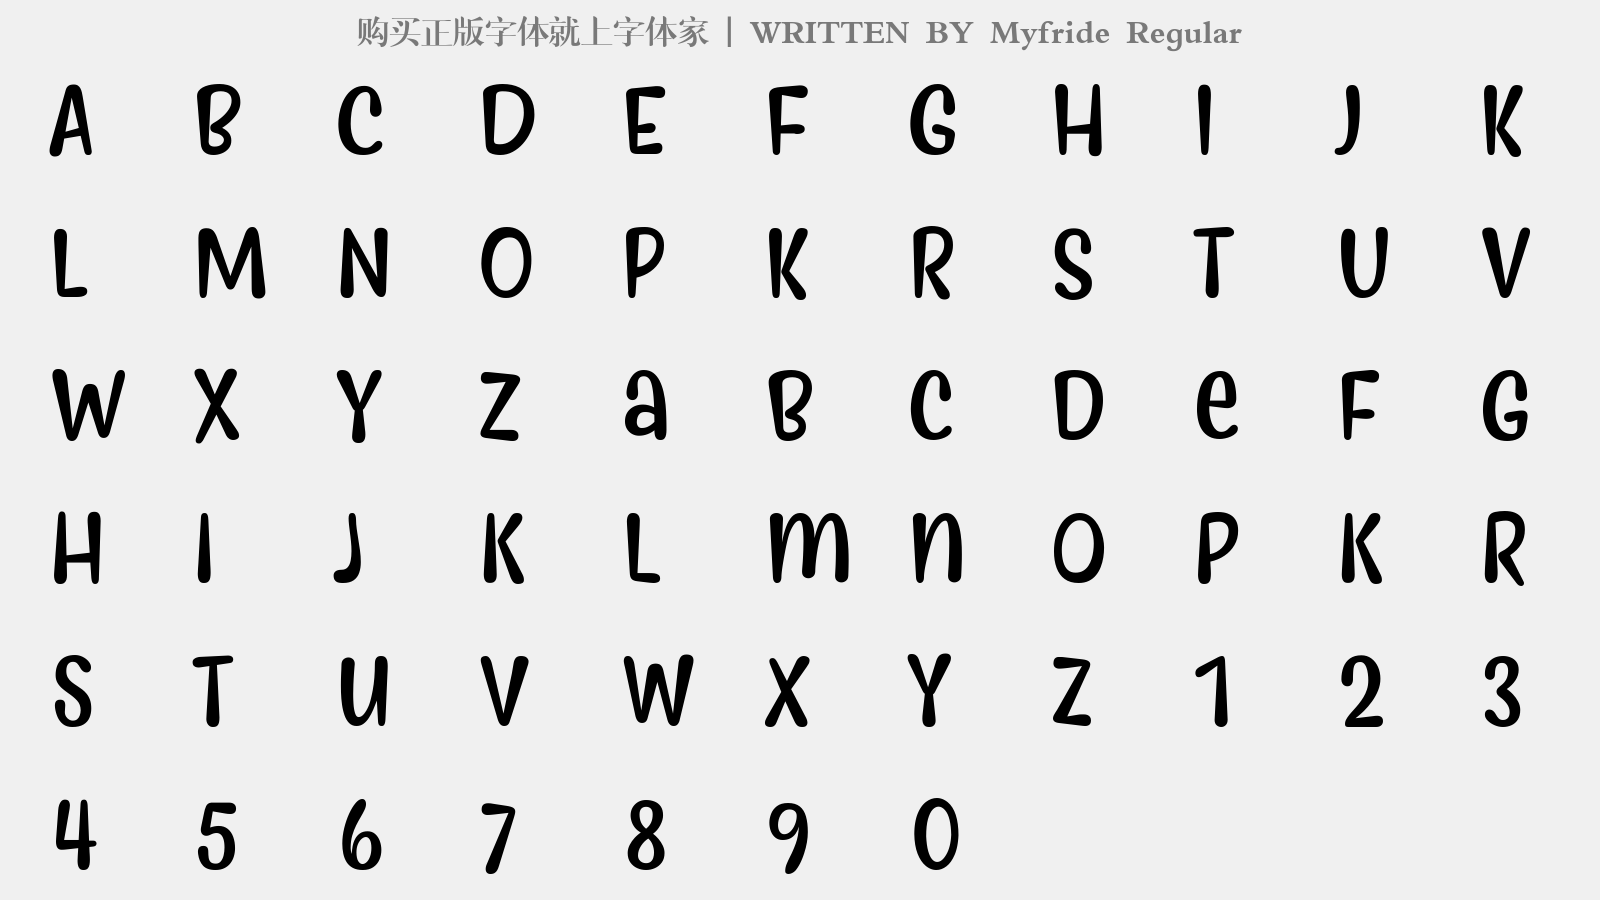 Myfride Regular - 大写字母/小写字母/数字